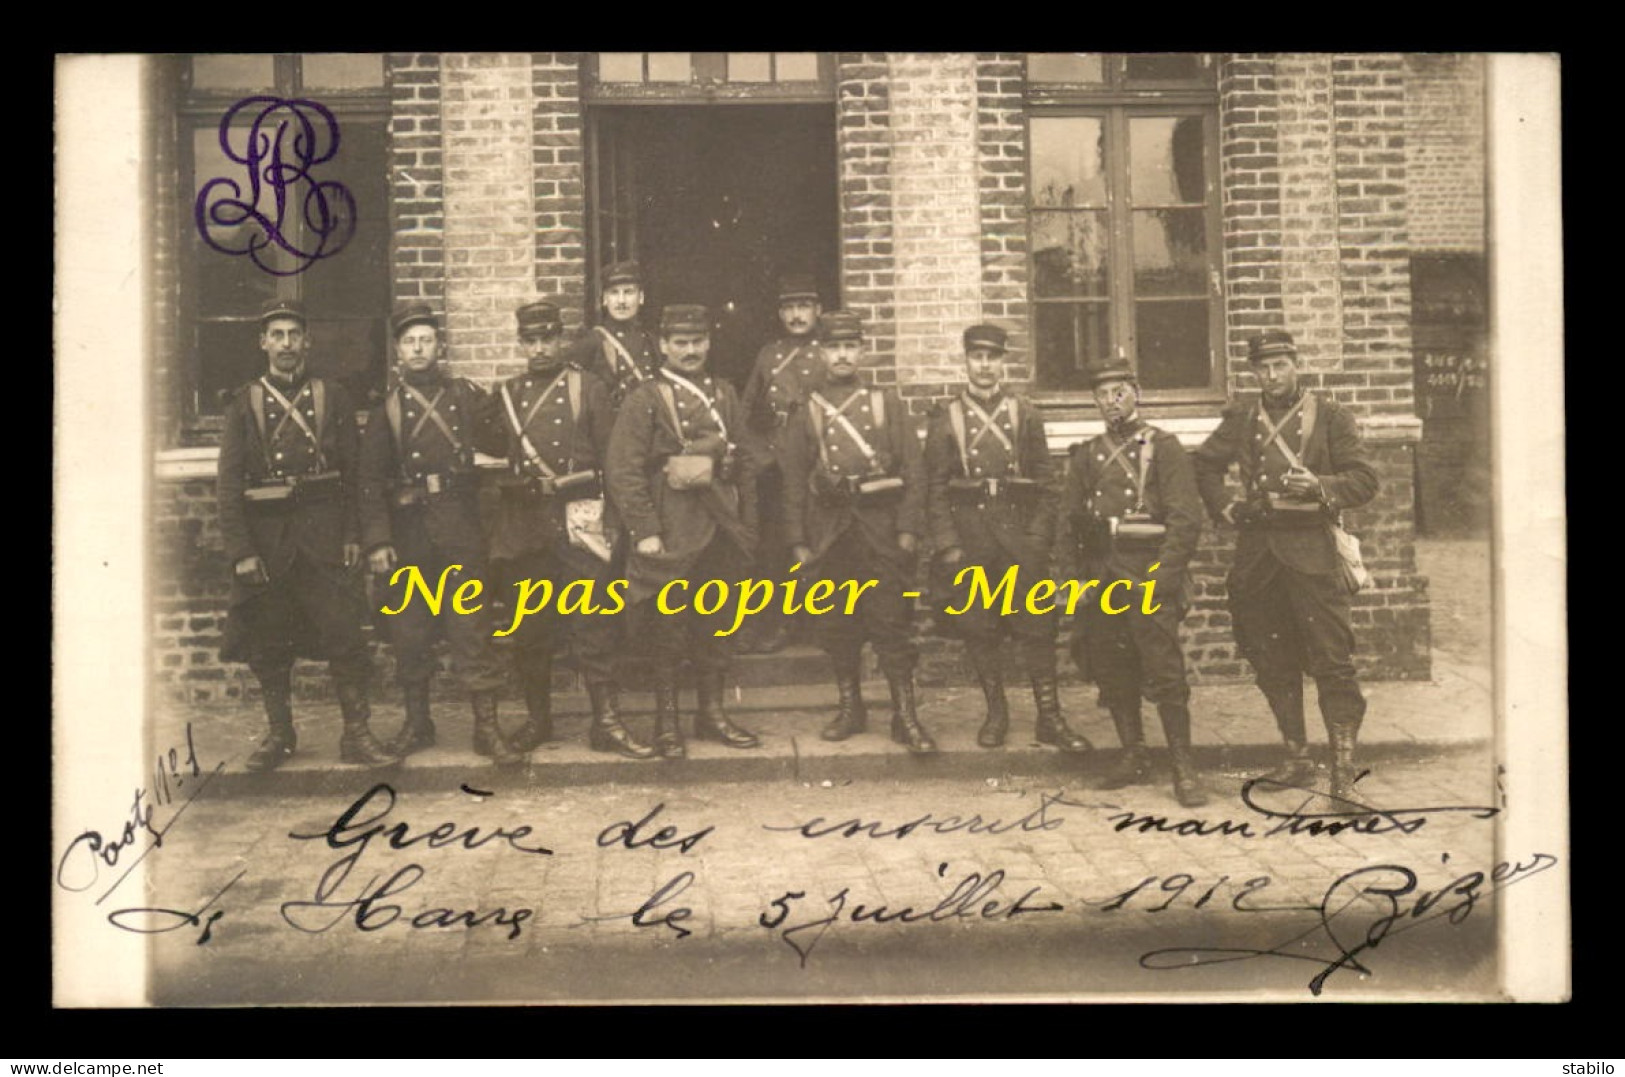 76 - LE HAVRE - GREVE DES INSCRITS MARITIMES LE 5 JUILLET 1912 - CARTE PHOTO ORIGINALE - Unclassified